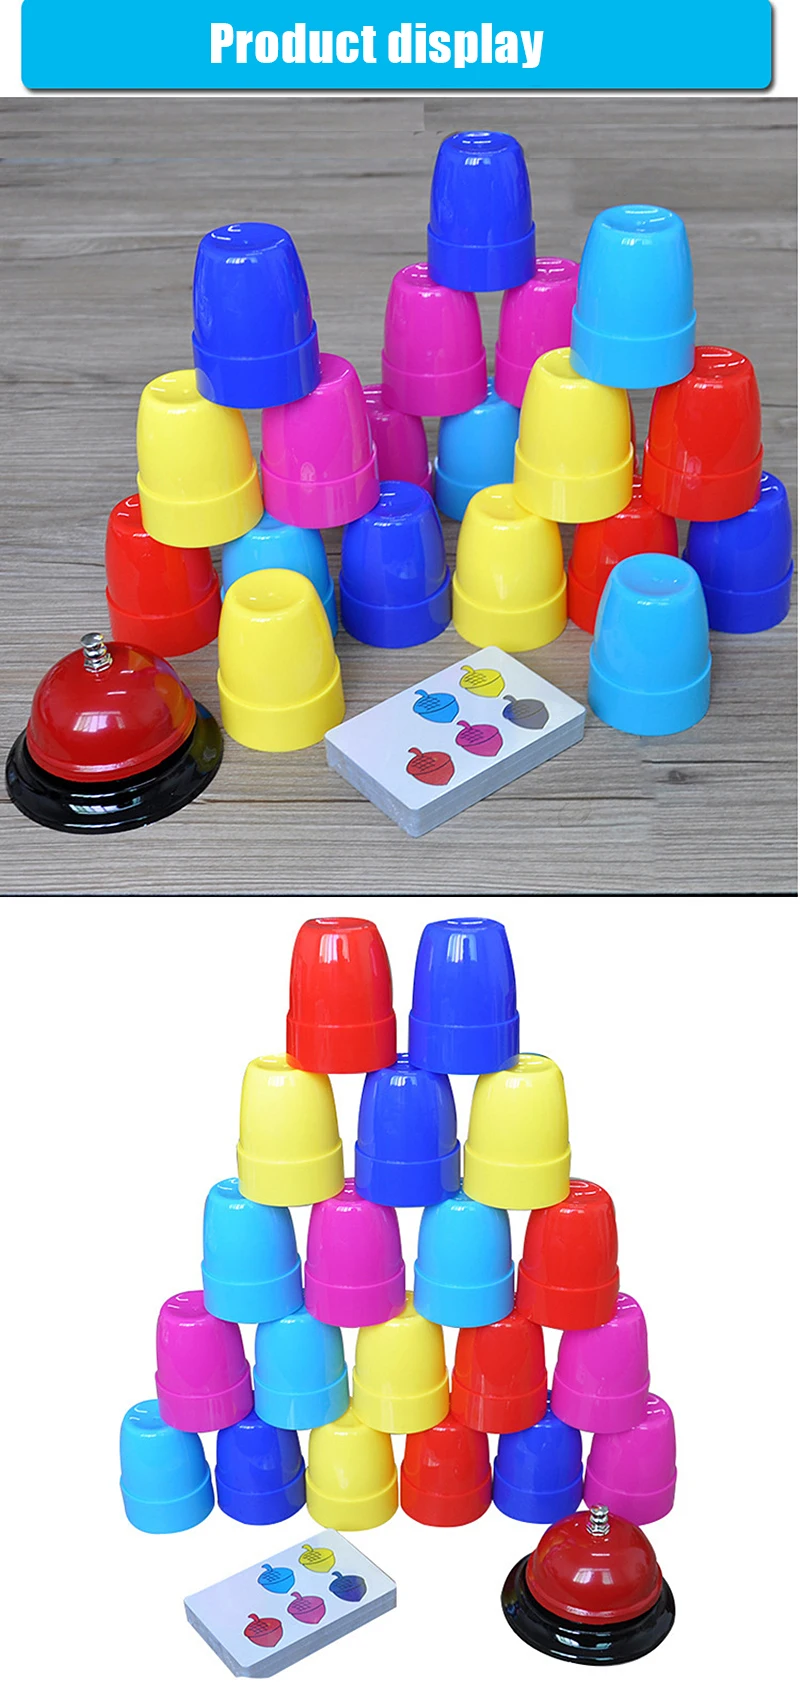 Brain Warfare Quick-пирамида из чашек Детские Настольные игры Обучение матери-детская игра интерактивная игрушка подарок